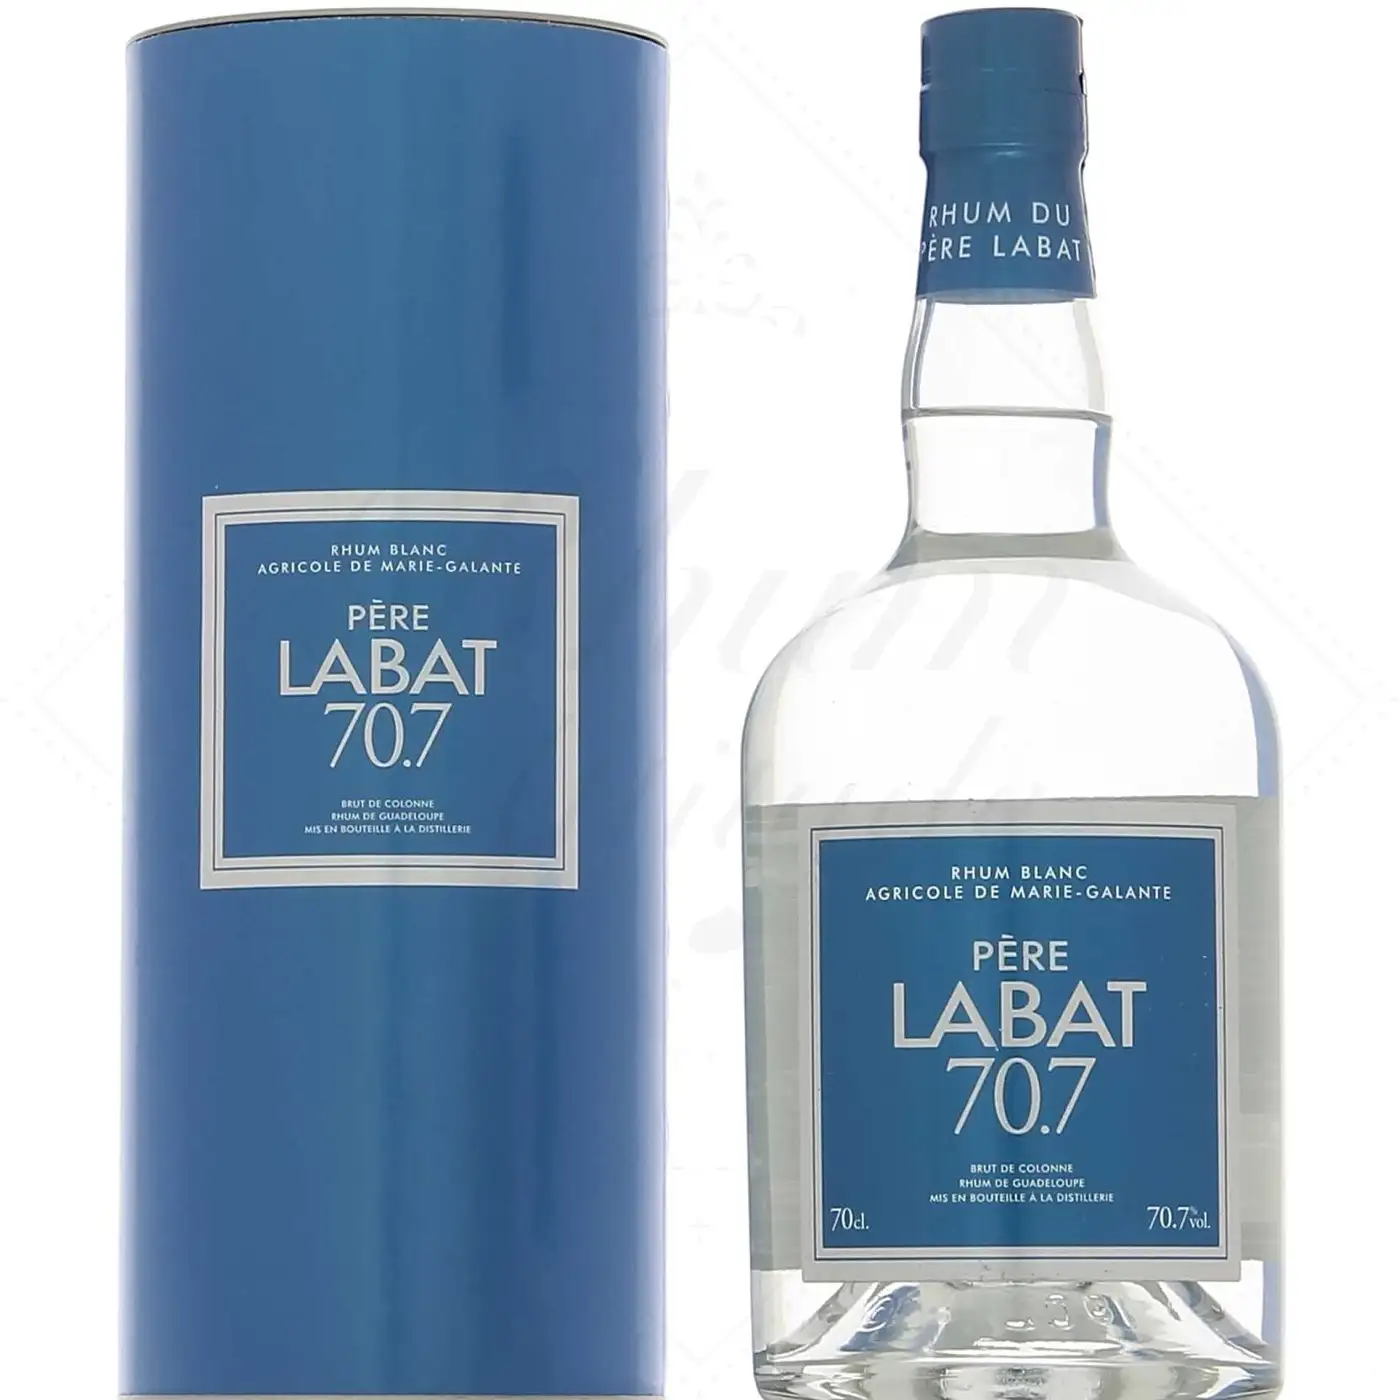 Image of the front of the bottle of the rum Père Labat Brut de colonne